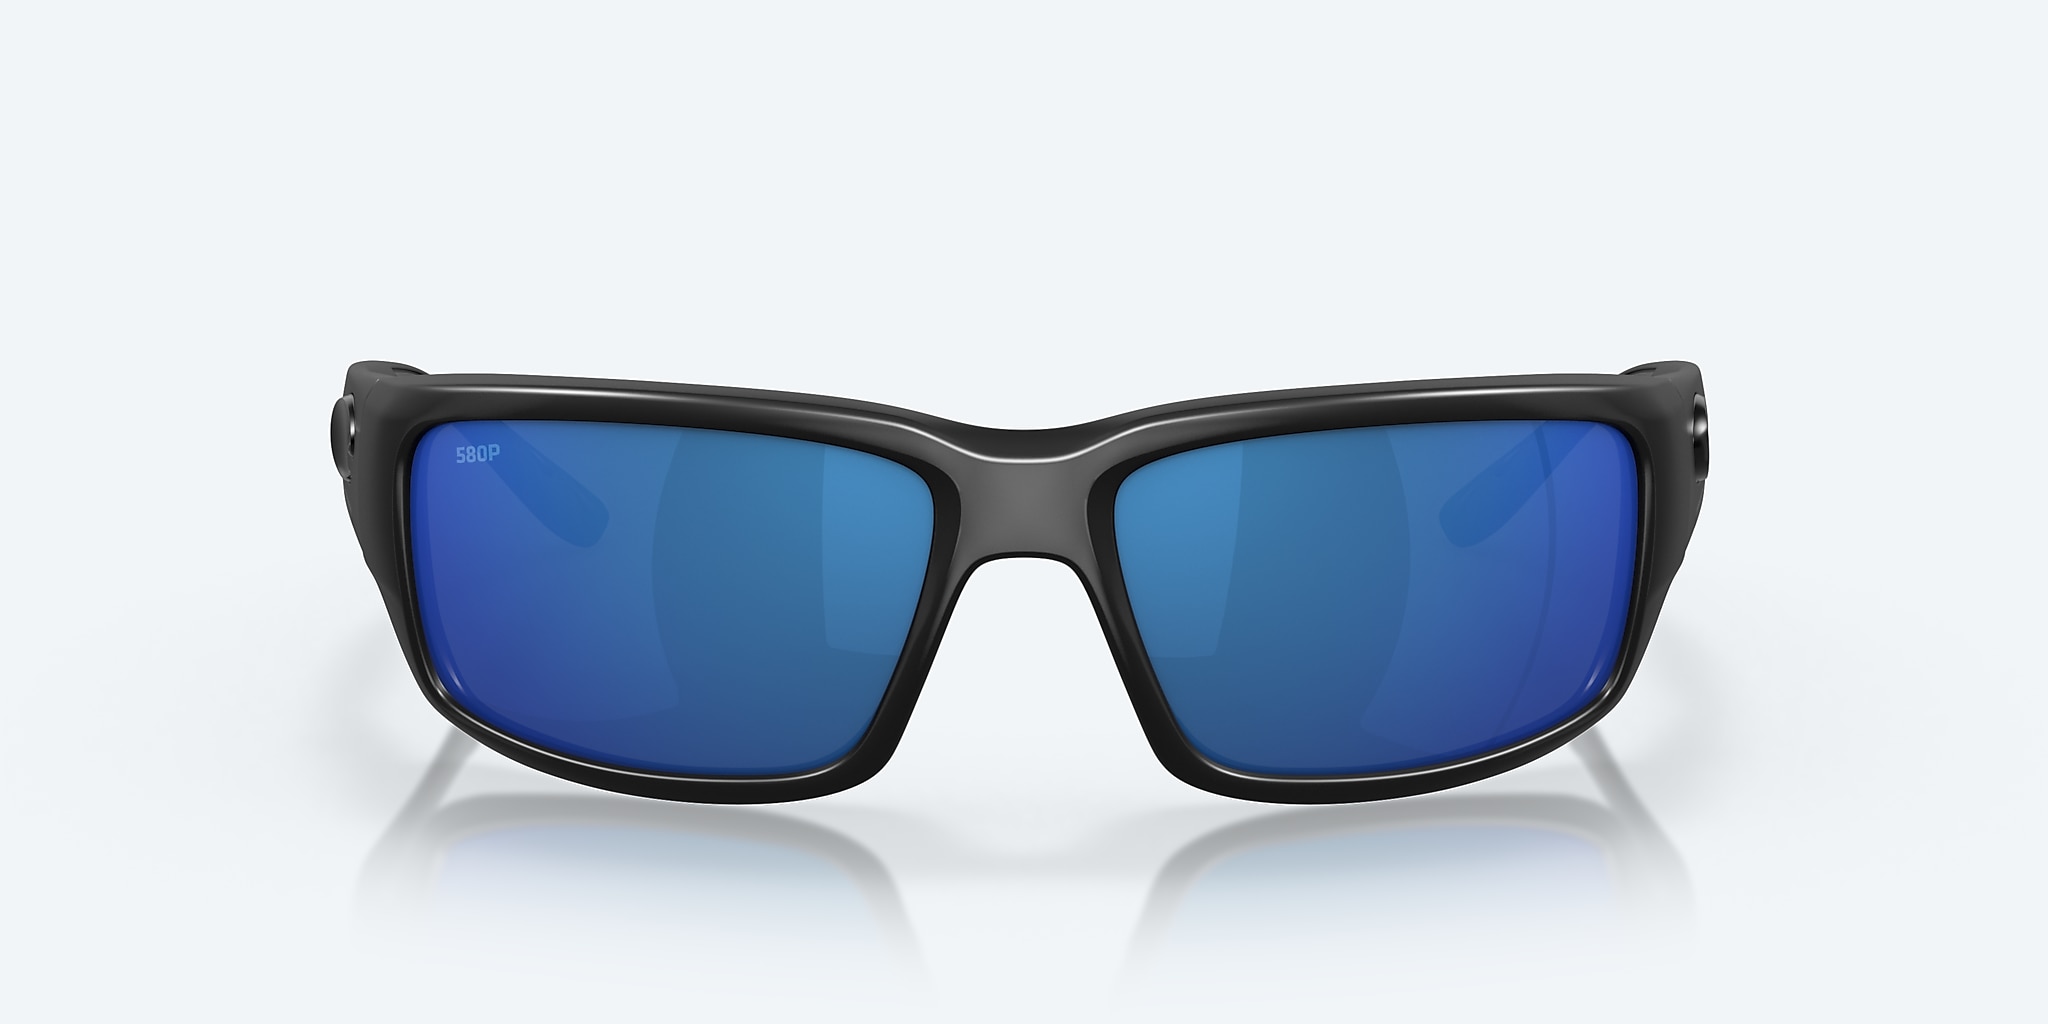 Sunglasses | Fantail Polarized Mirror Del in Costa Blue Mar®